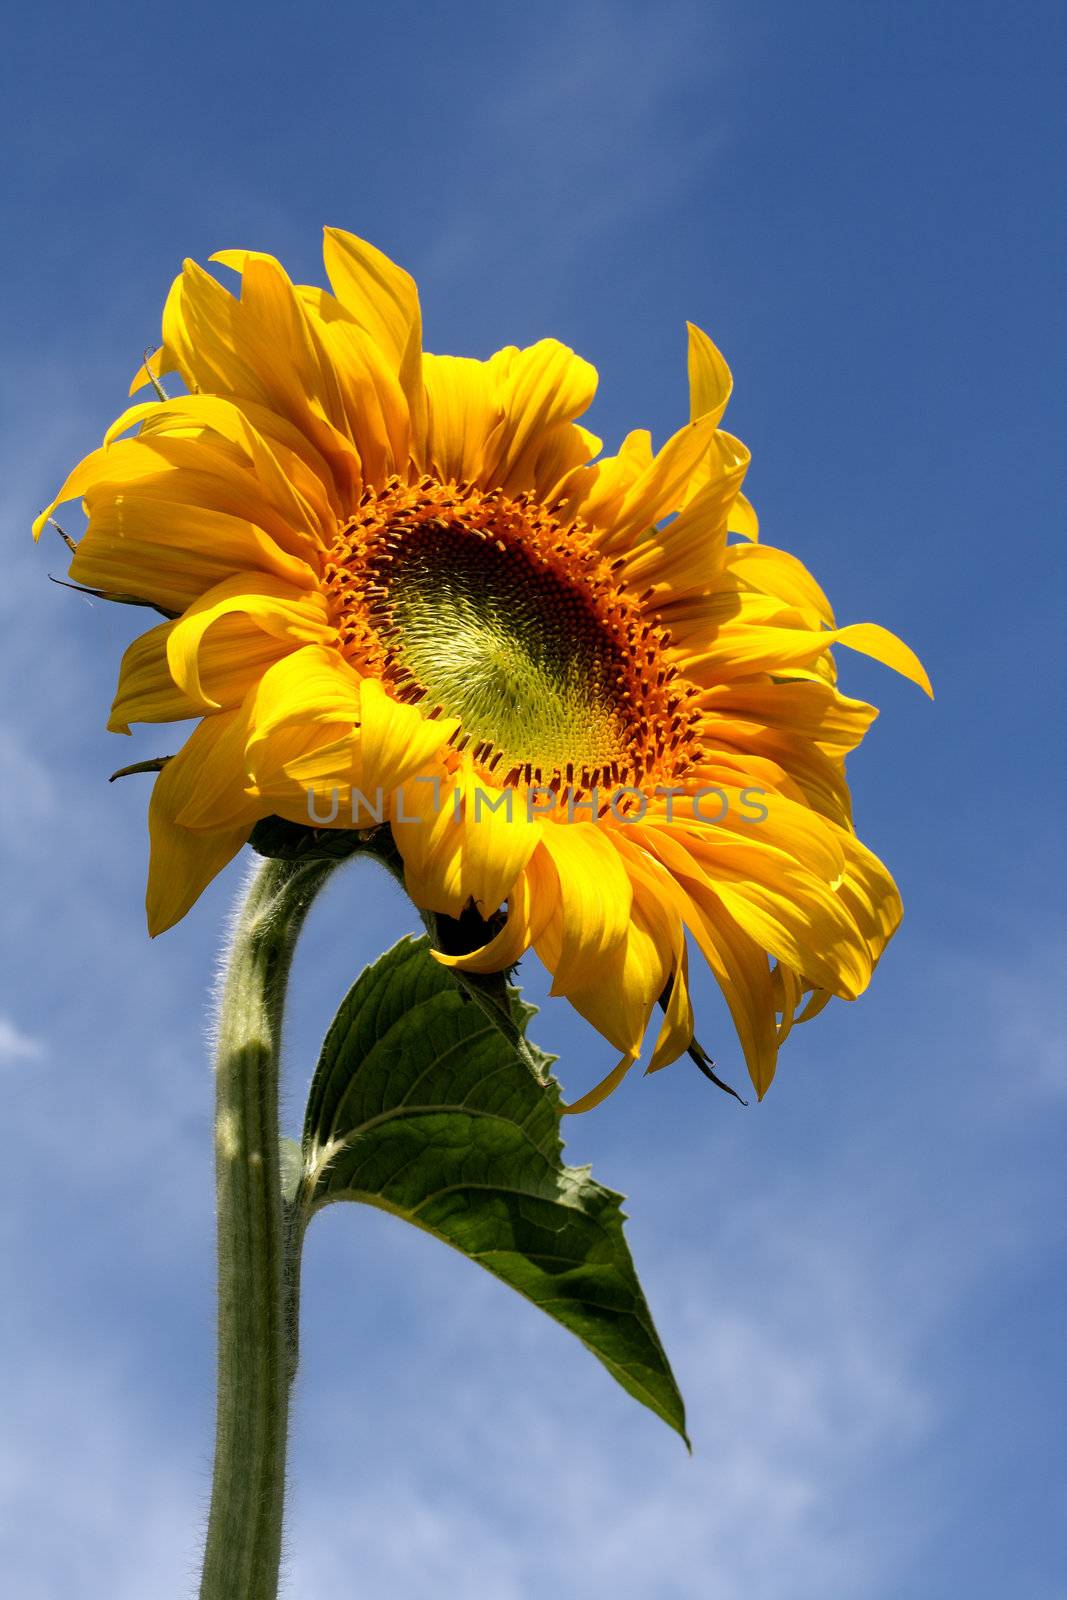 sunflower under blue sky by Mikko